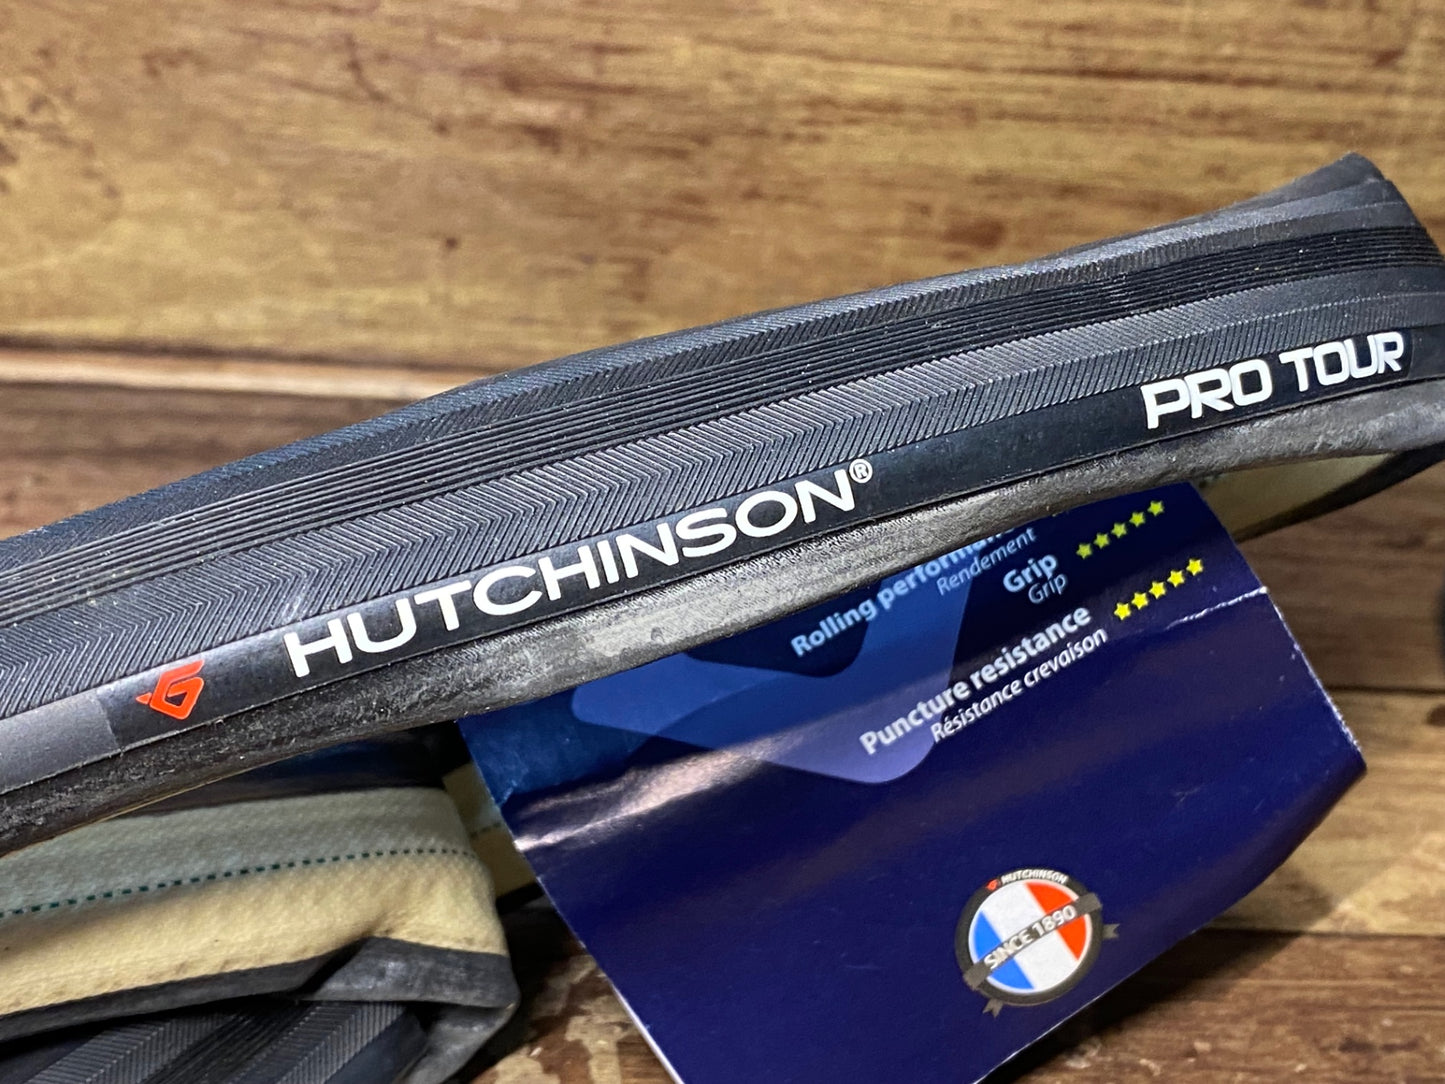 HU877 ハッチンソン HUTCHINSON プロツアー PRO TOUR チューブラータイヤ 25C